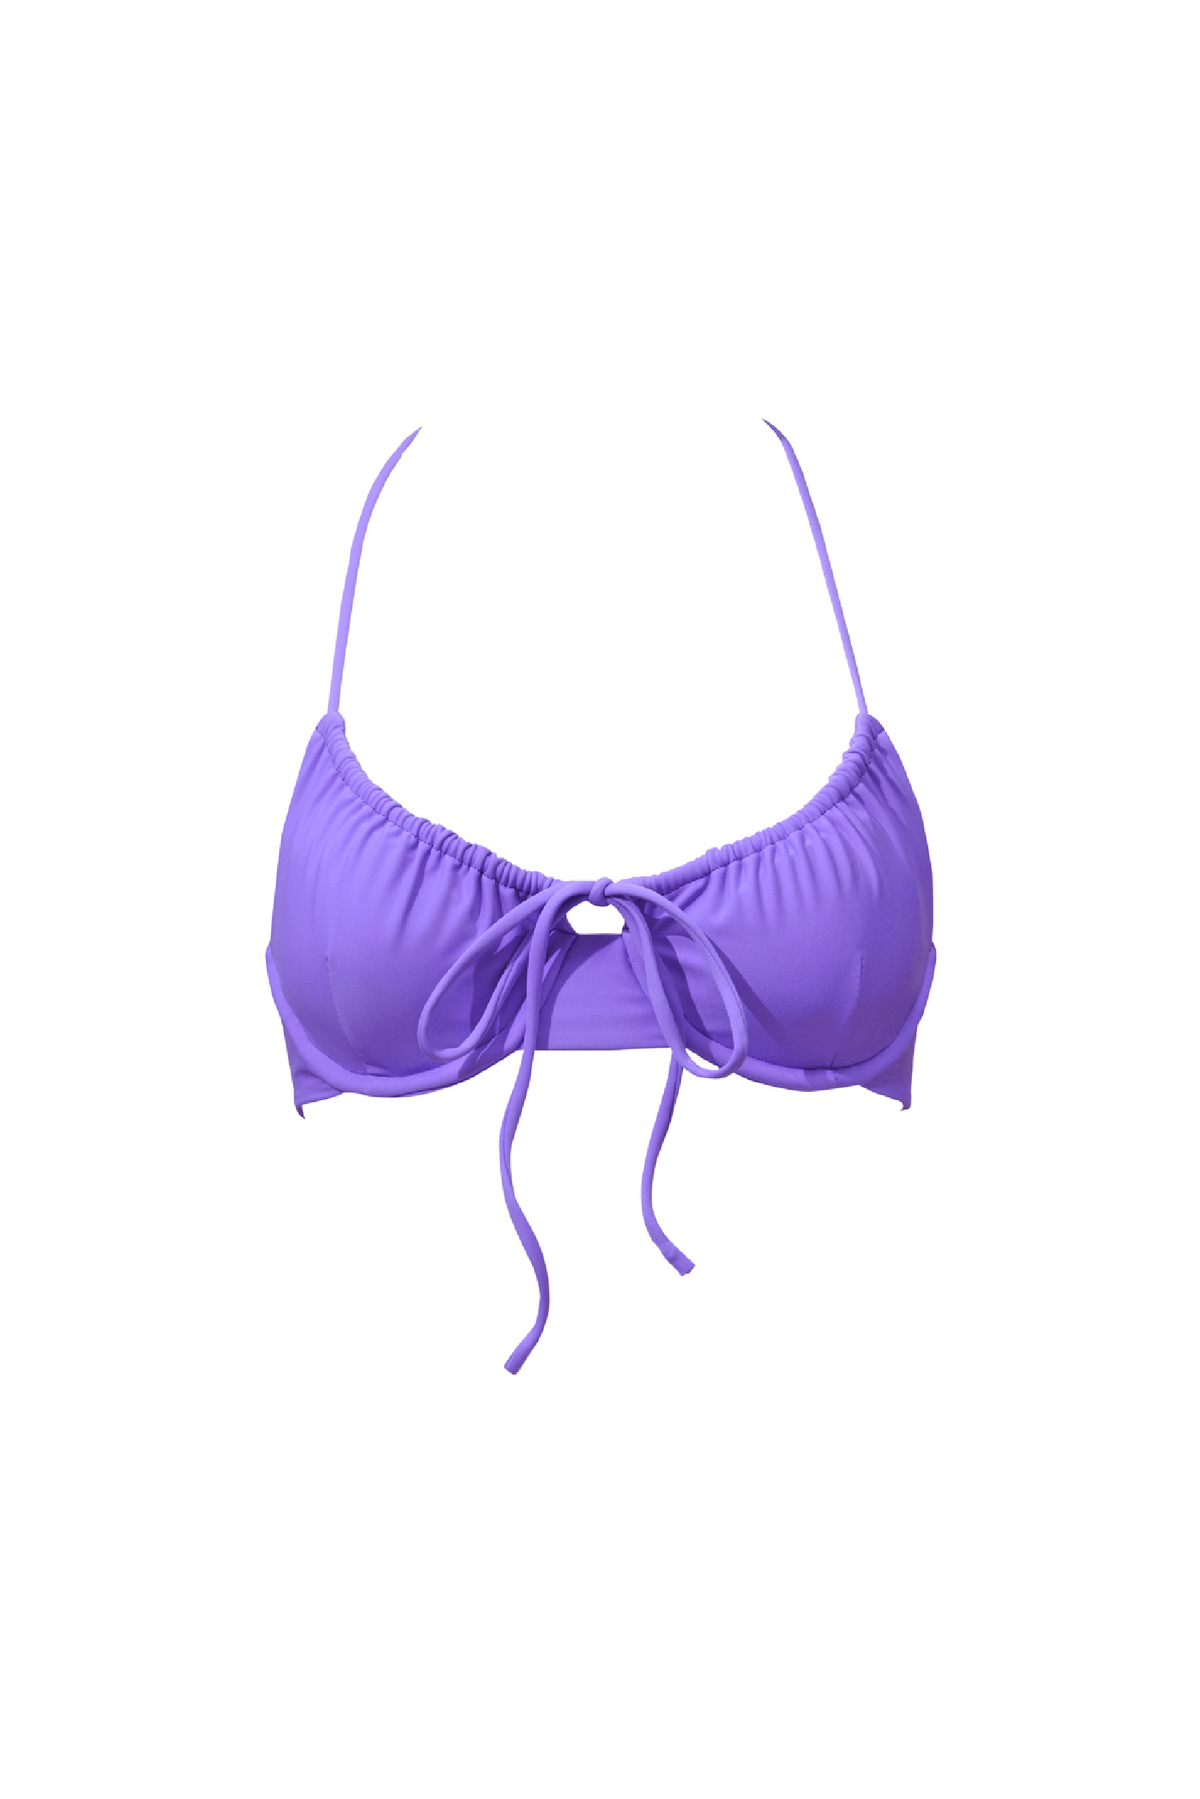 Mia Halter Top - Ultraviolet | Align Swim